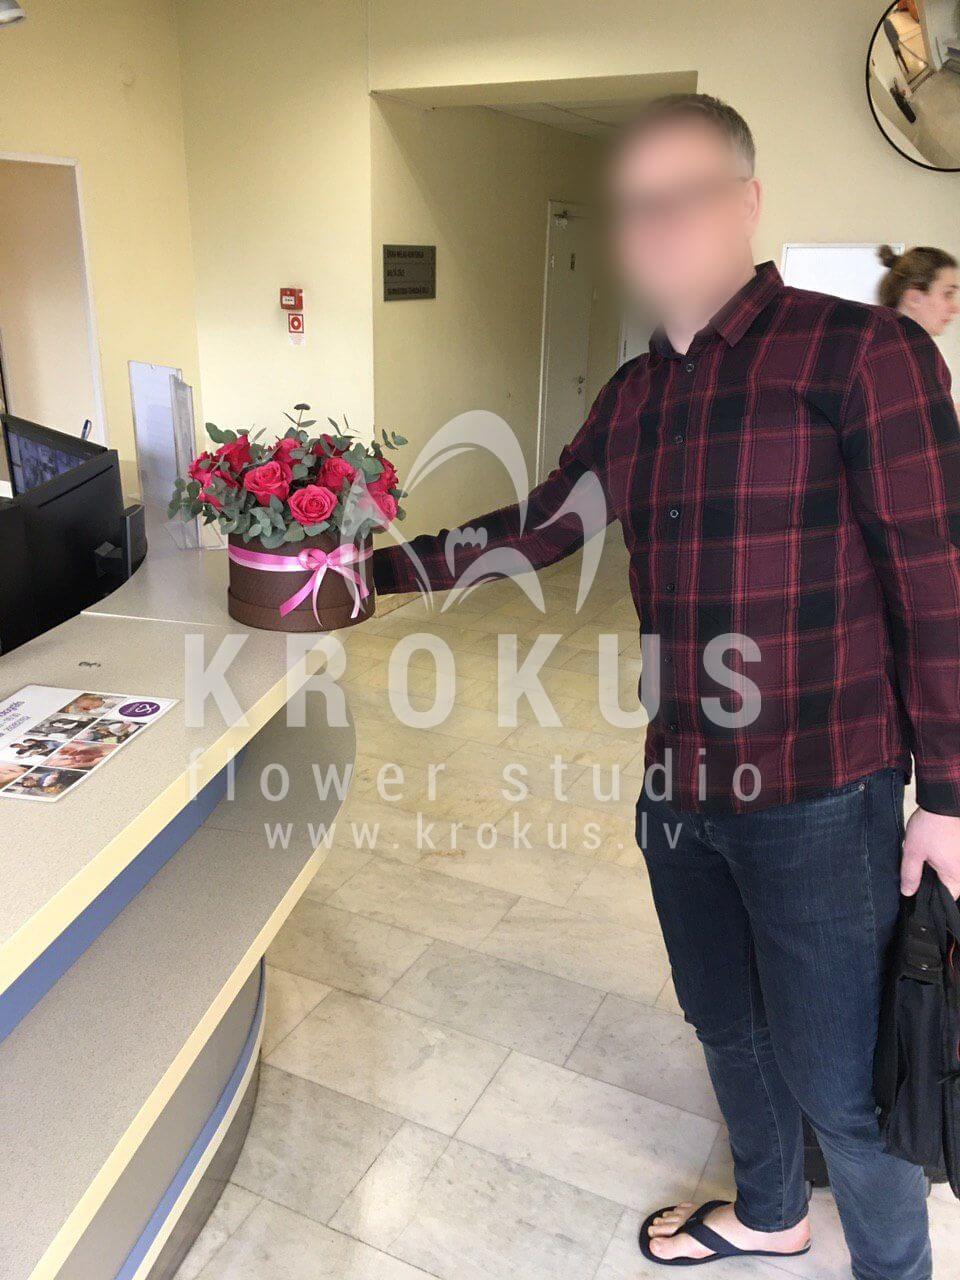 Доставка цветов в город Рига (розовые розыстильная коробкаэвкалипт)